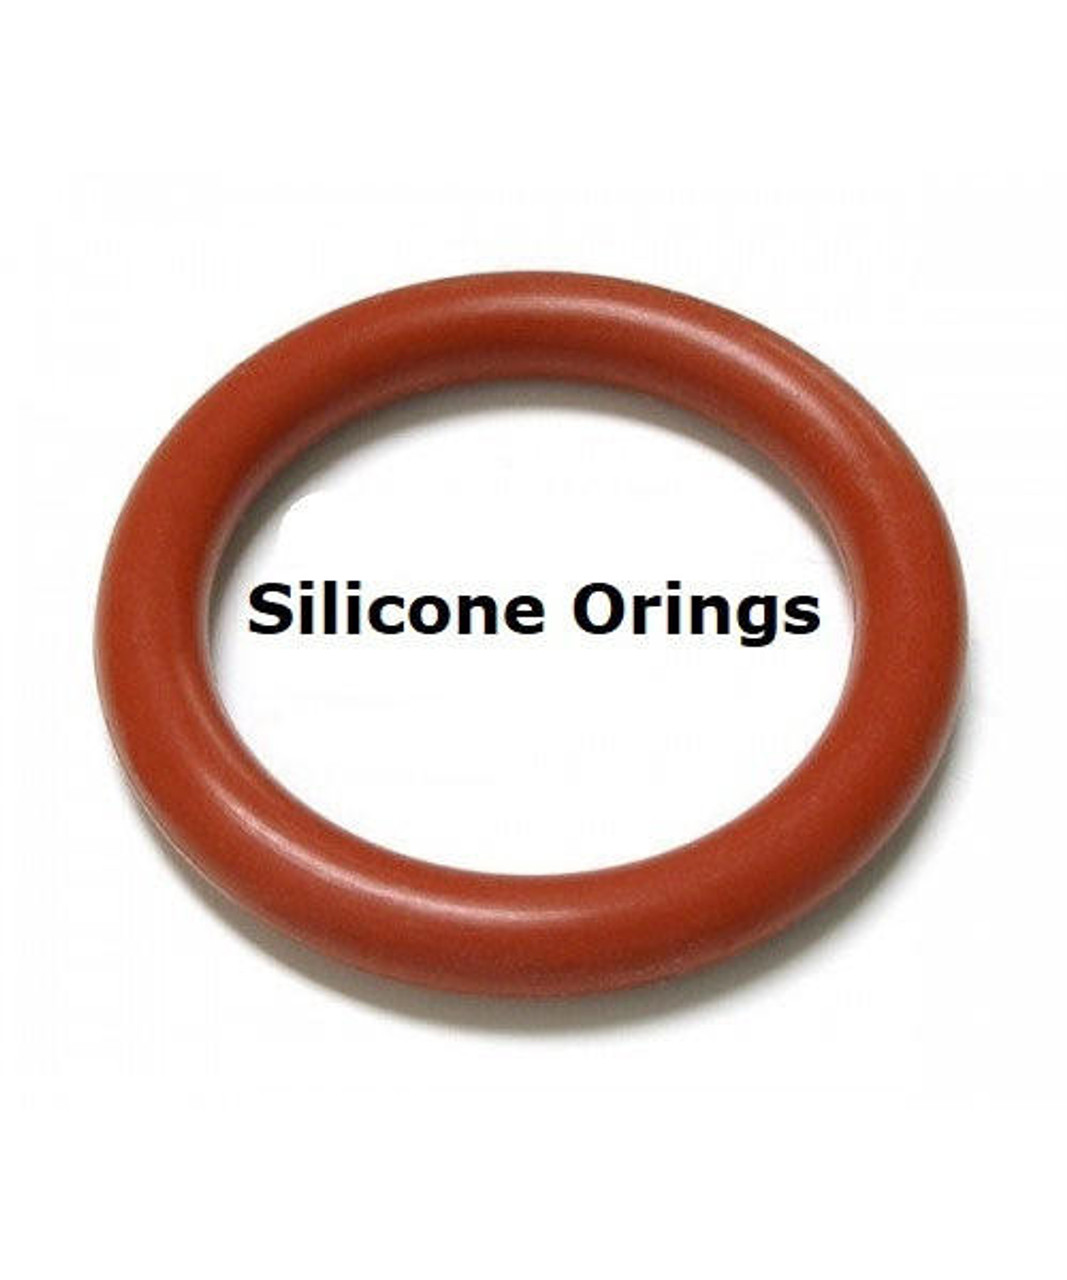 Silicone O-rings Size 250    Minimum 2 pcs